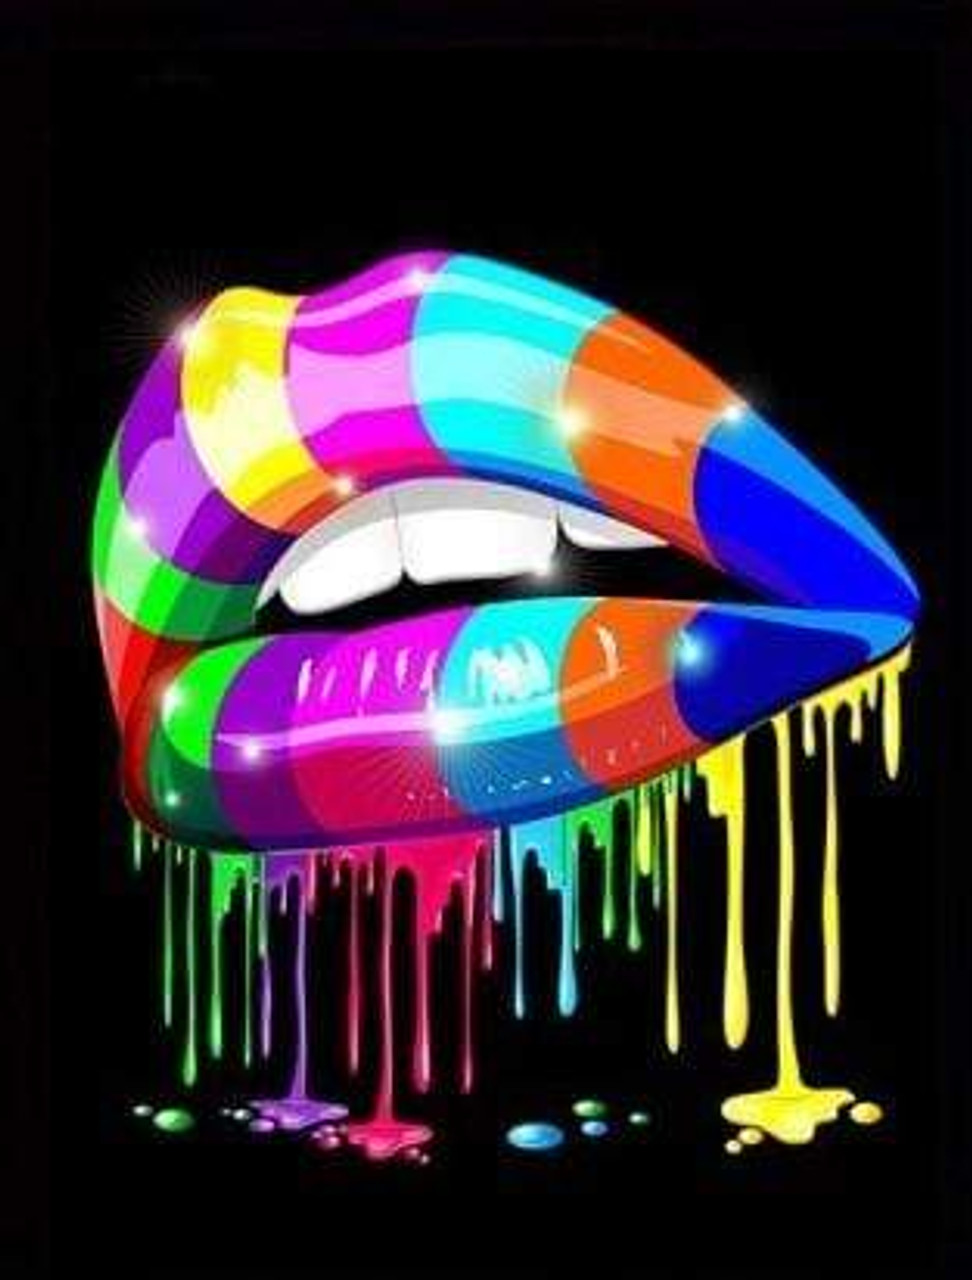 rainbow diamond lips